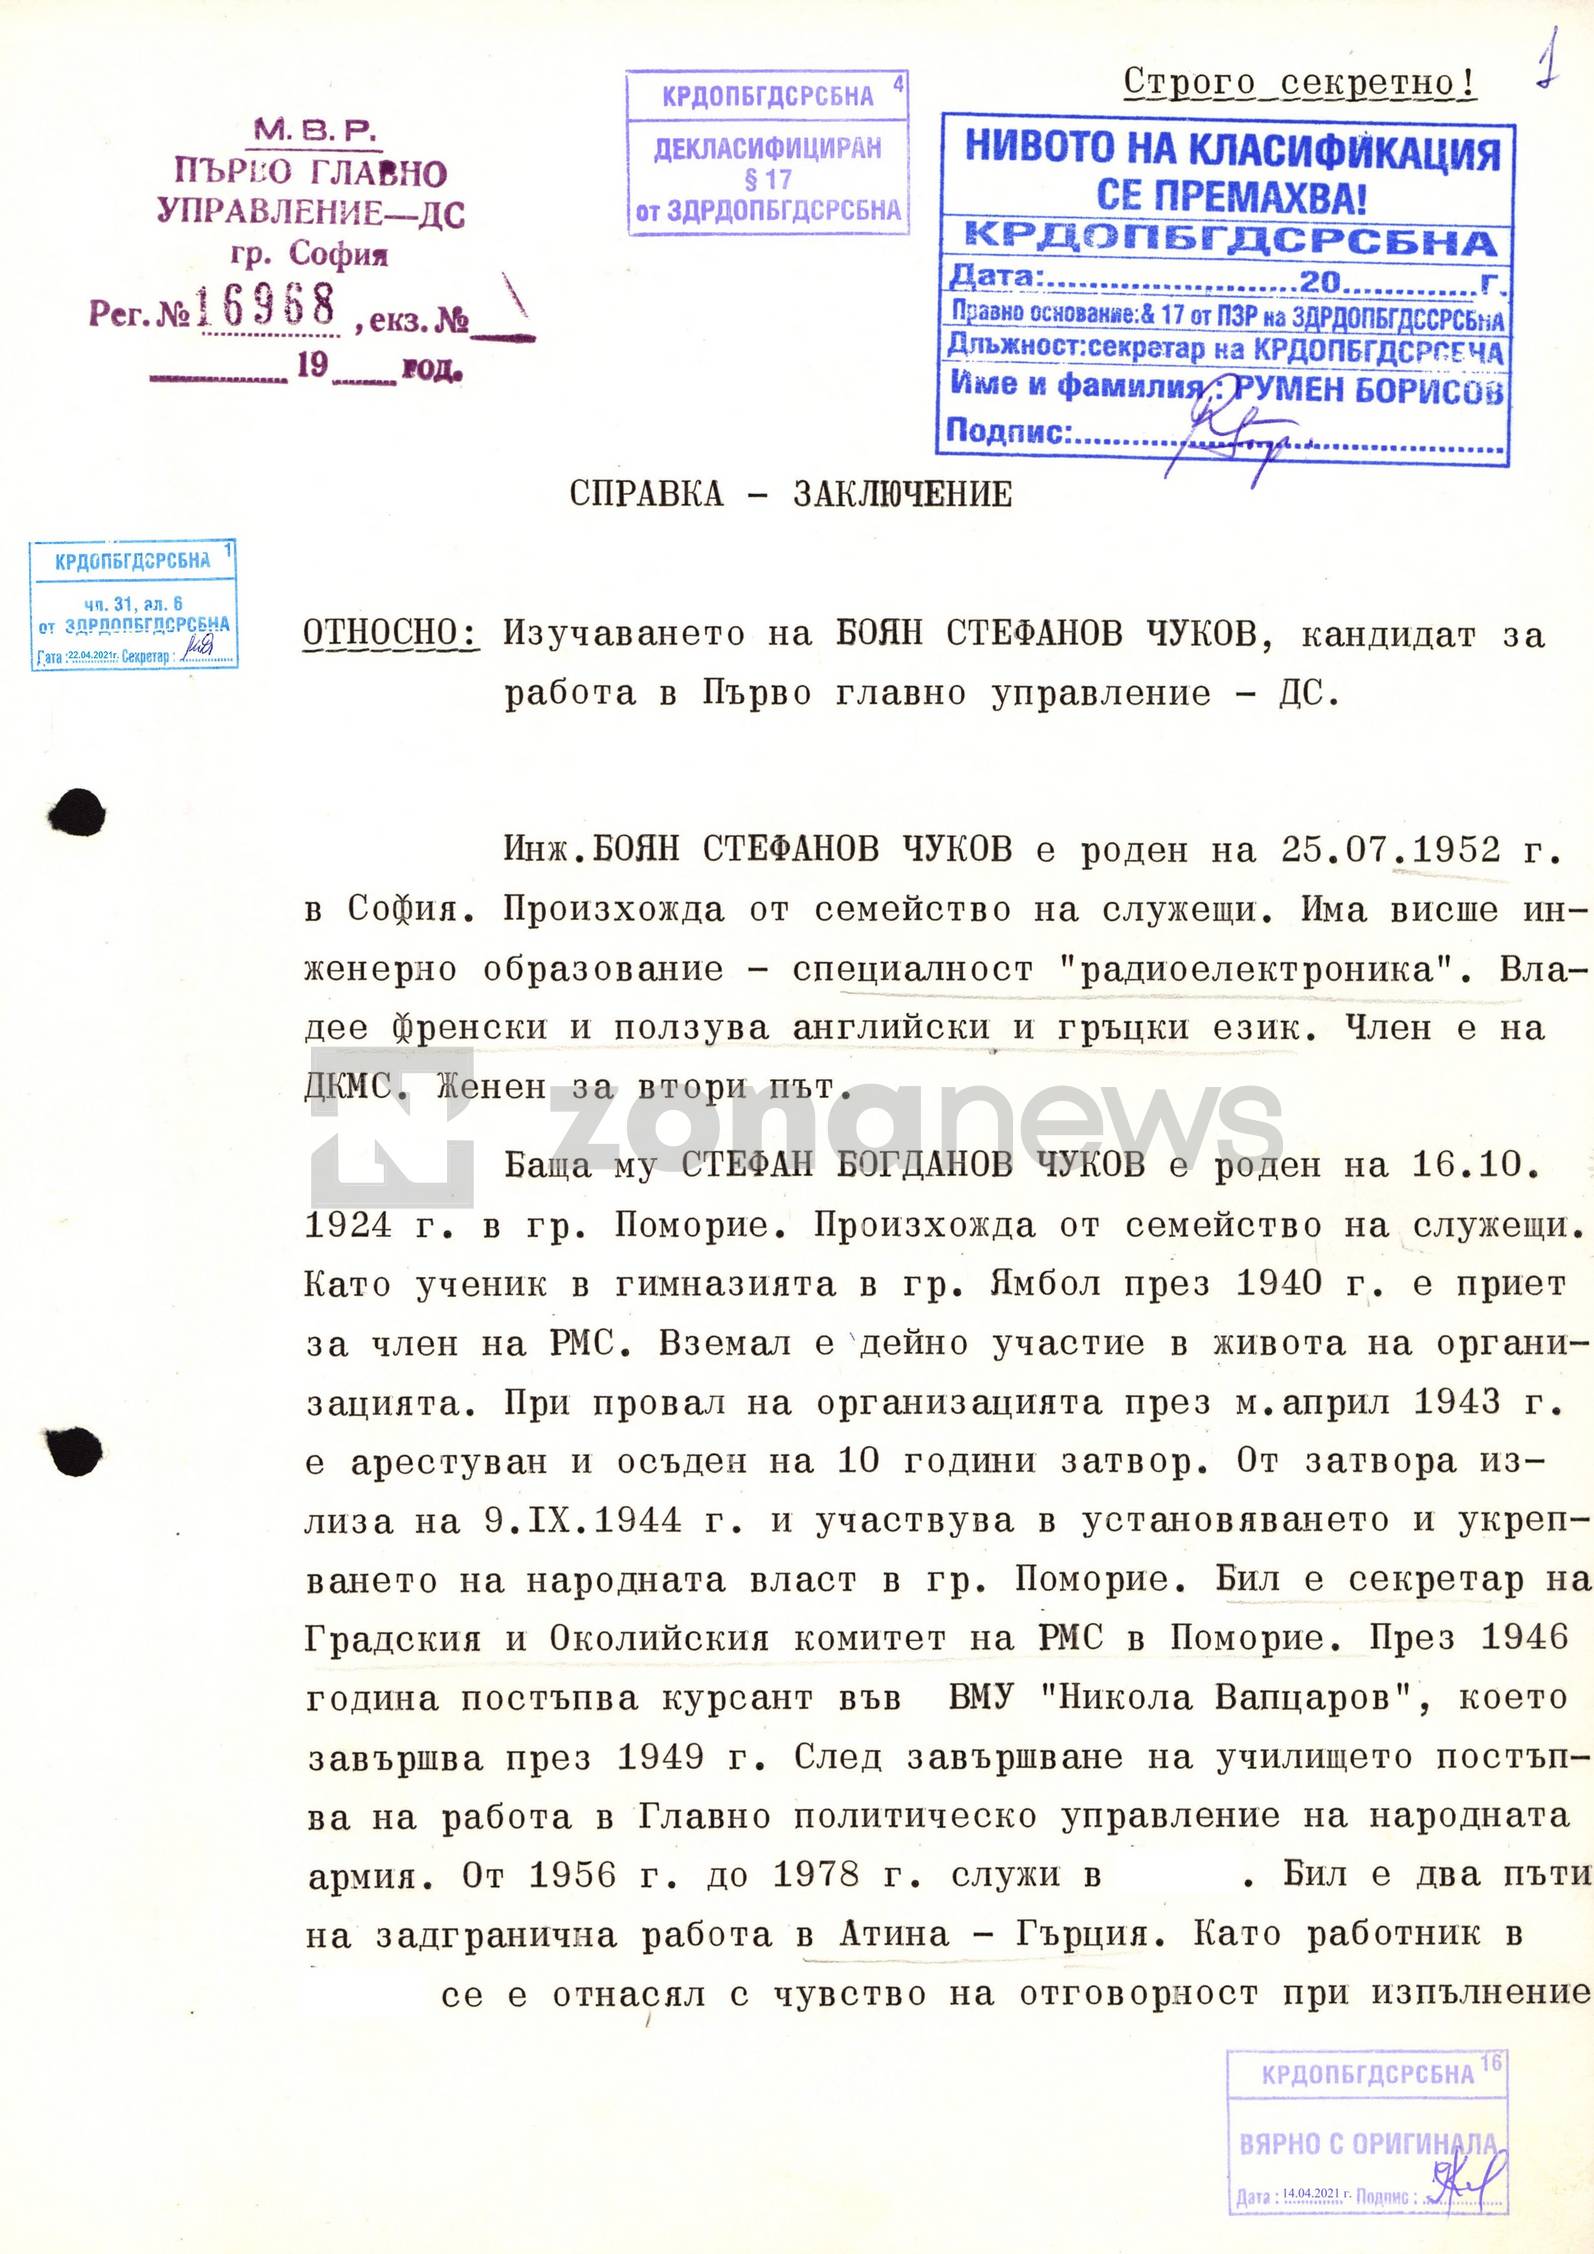 Част от проучването на Чуков за постъпване на работа в ПГУ-ДС